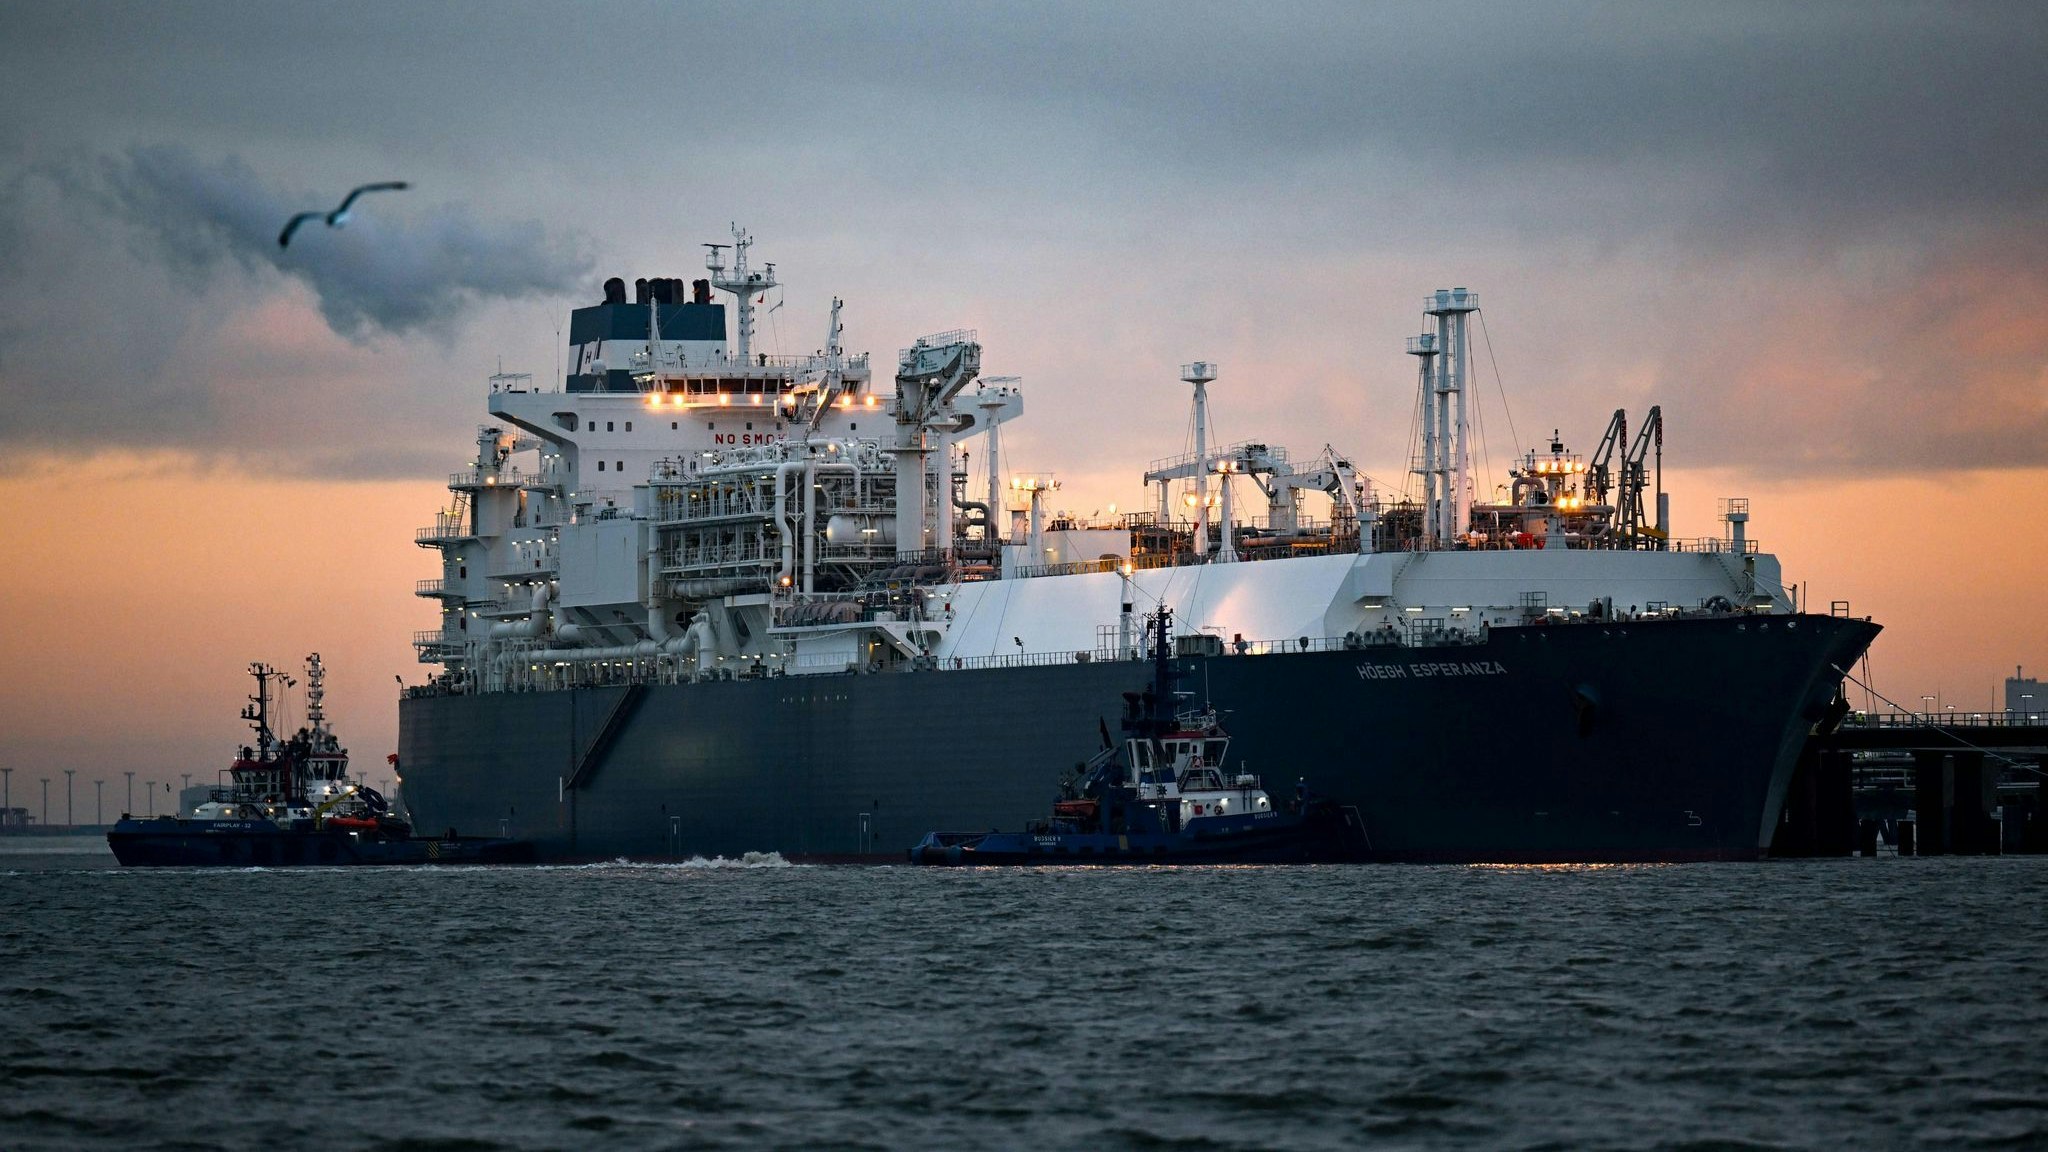 Das Spezialschiff „Höegh Esperanza“ wird in Wilhelmshaven angelegt. Es dient als schwimmende Plattform, um Flüssigerdgas (LNG) anzulanden und zu regasifizieren. Foto: dpa/Schuldt